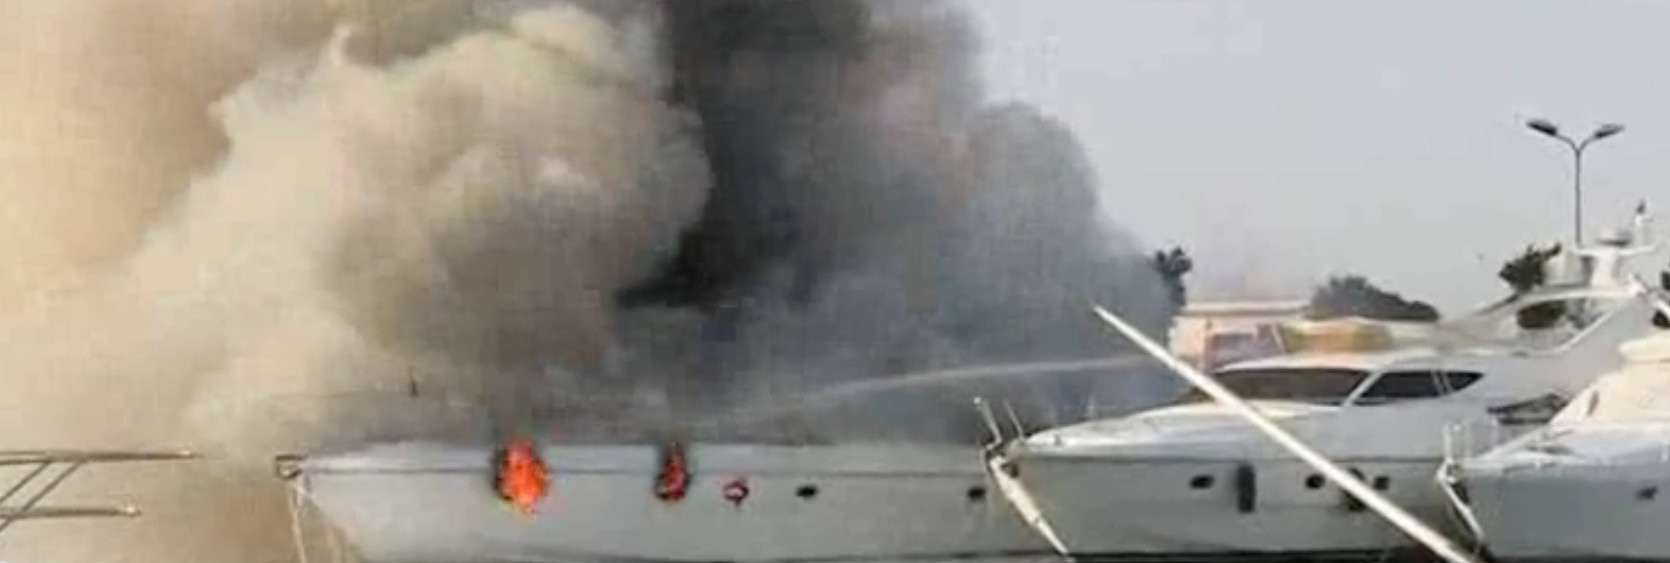 Πυρκαγιά σε σκάφη στη μαρίνα Γλυφάδας